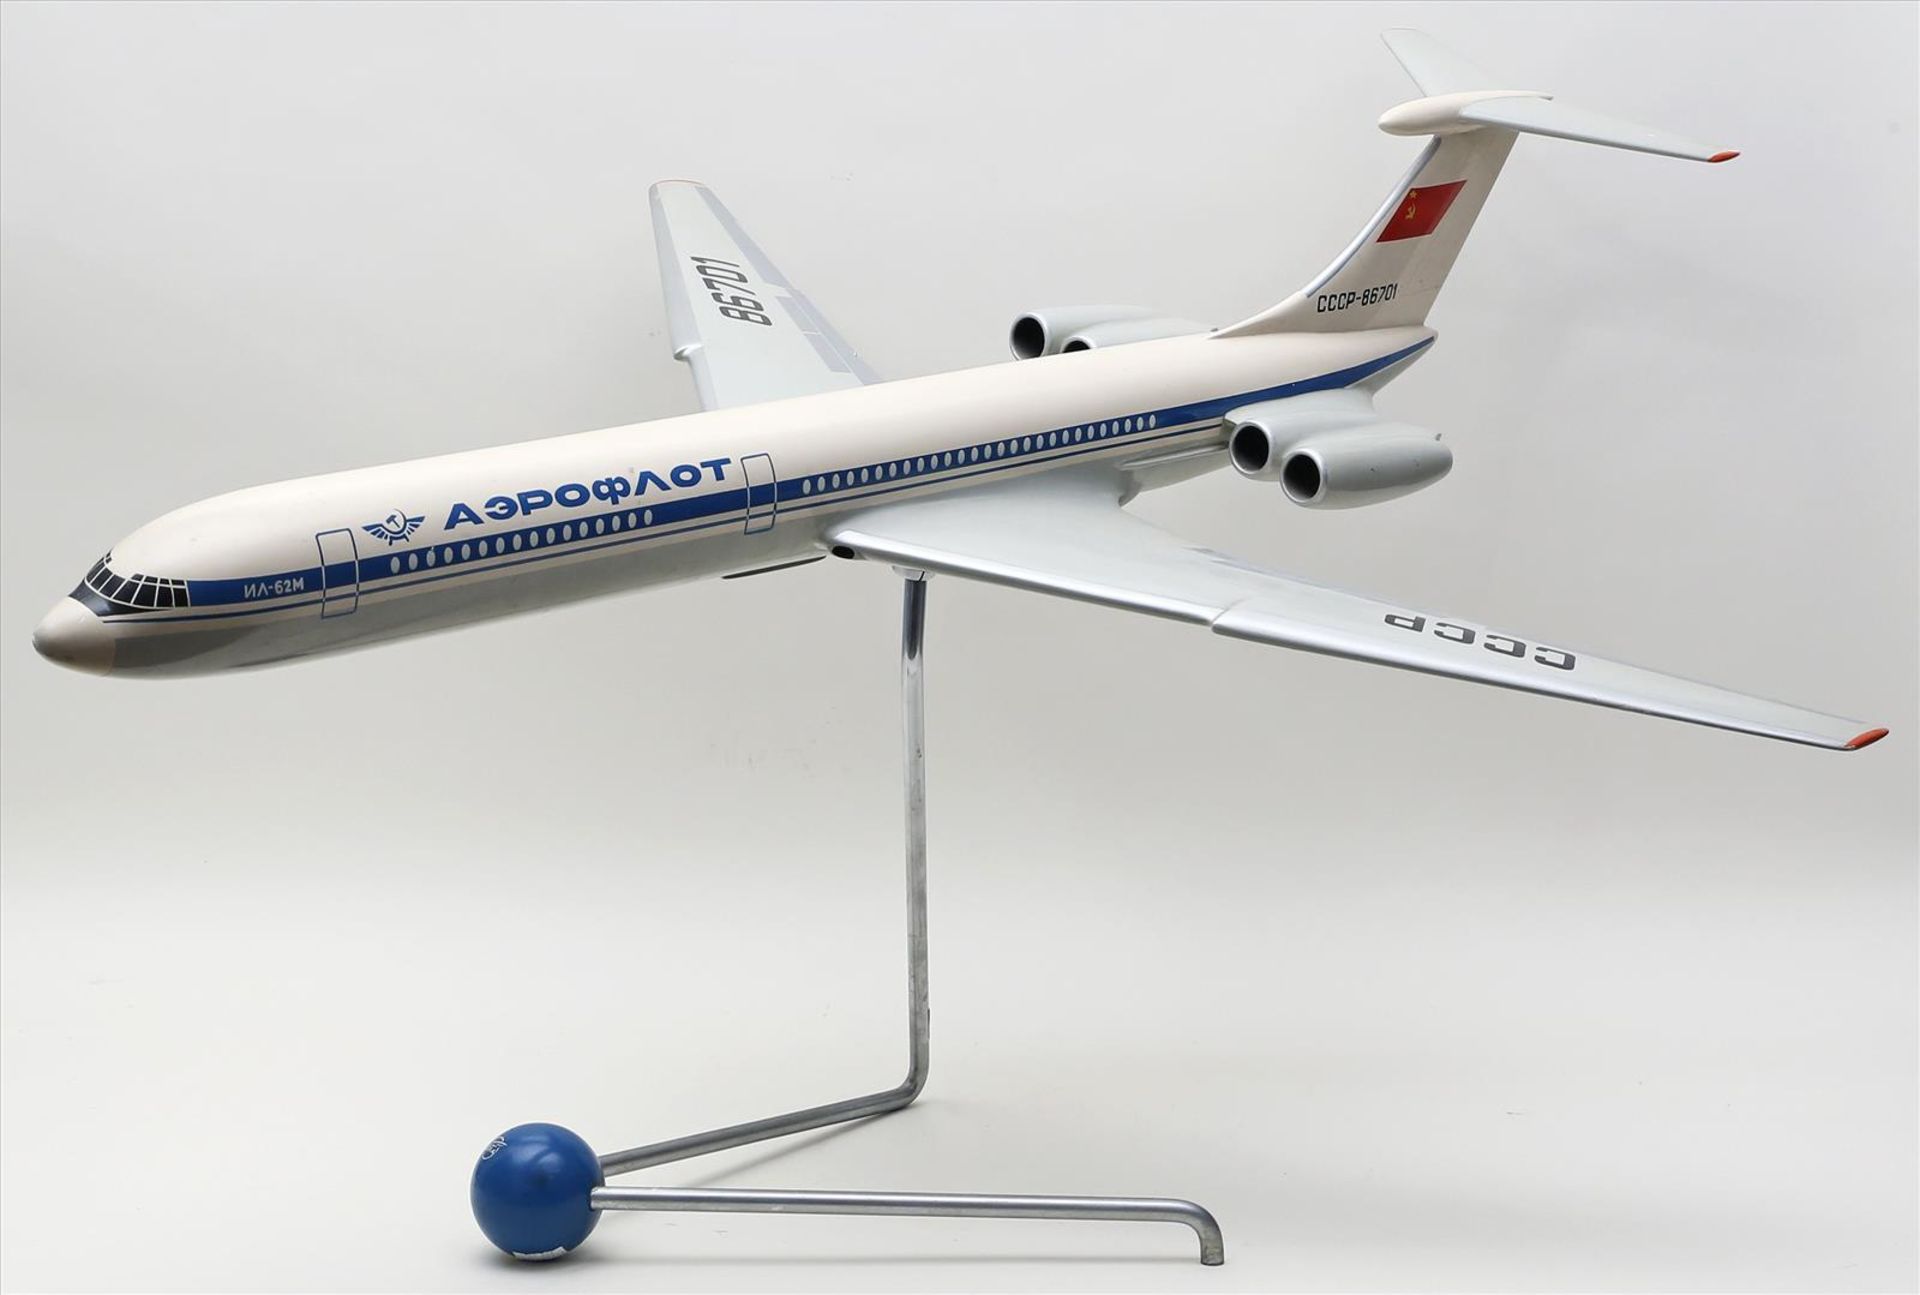 Flugzeugmodell "Aeroflot".